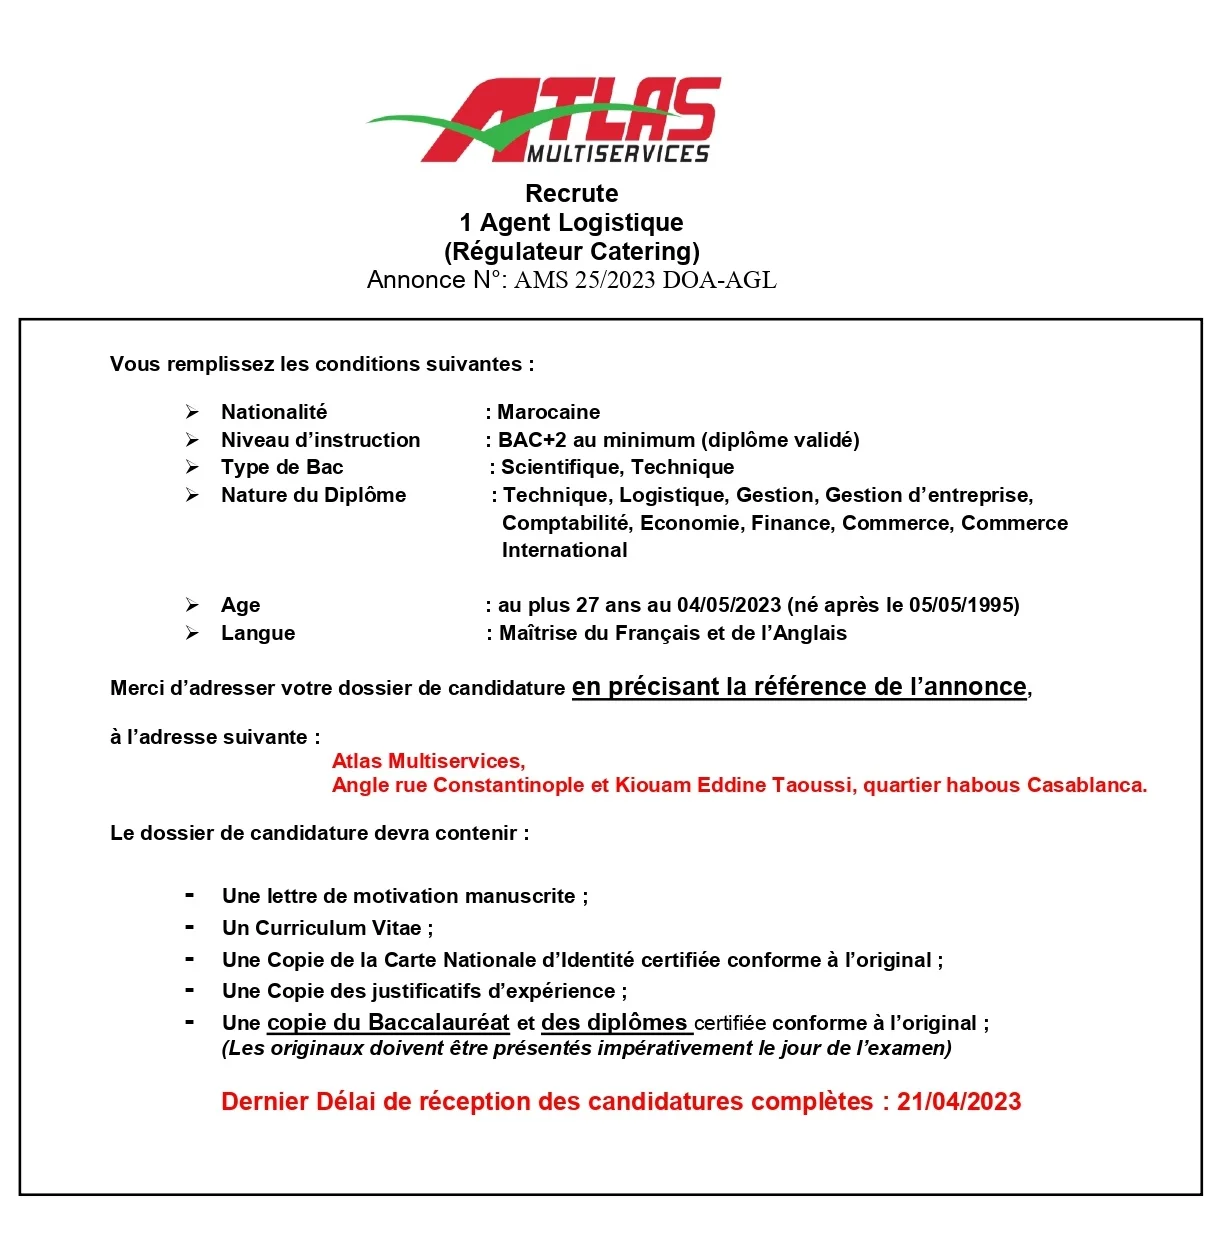 ATLAS Multiservices recrute Agent Logistique BAC+2